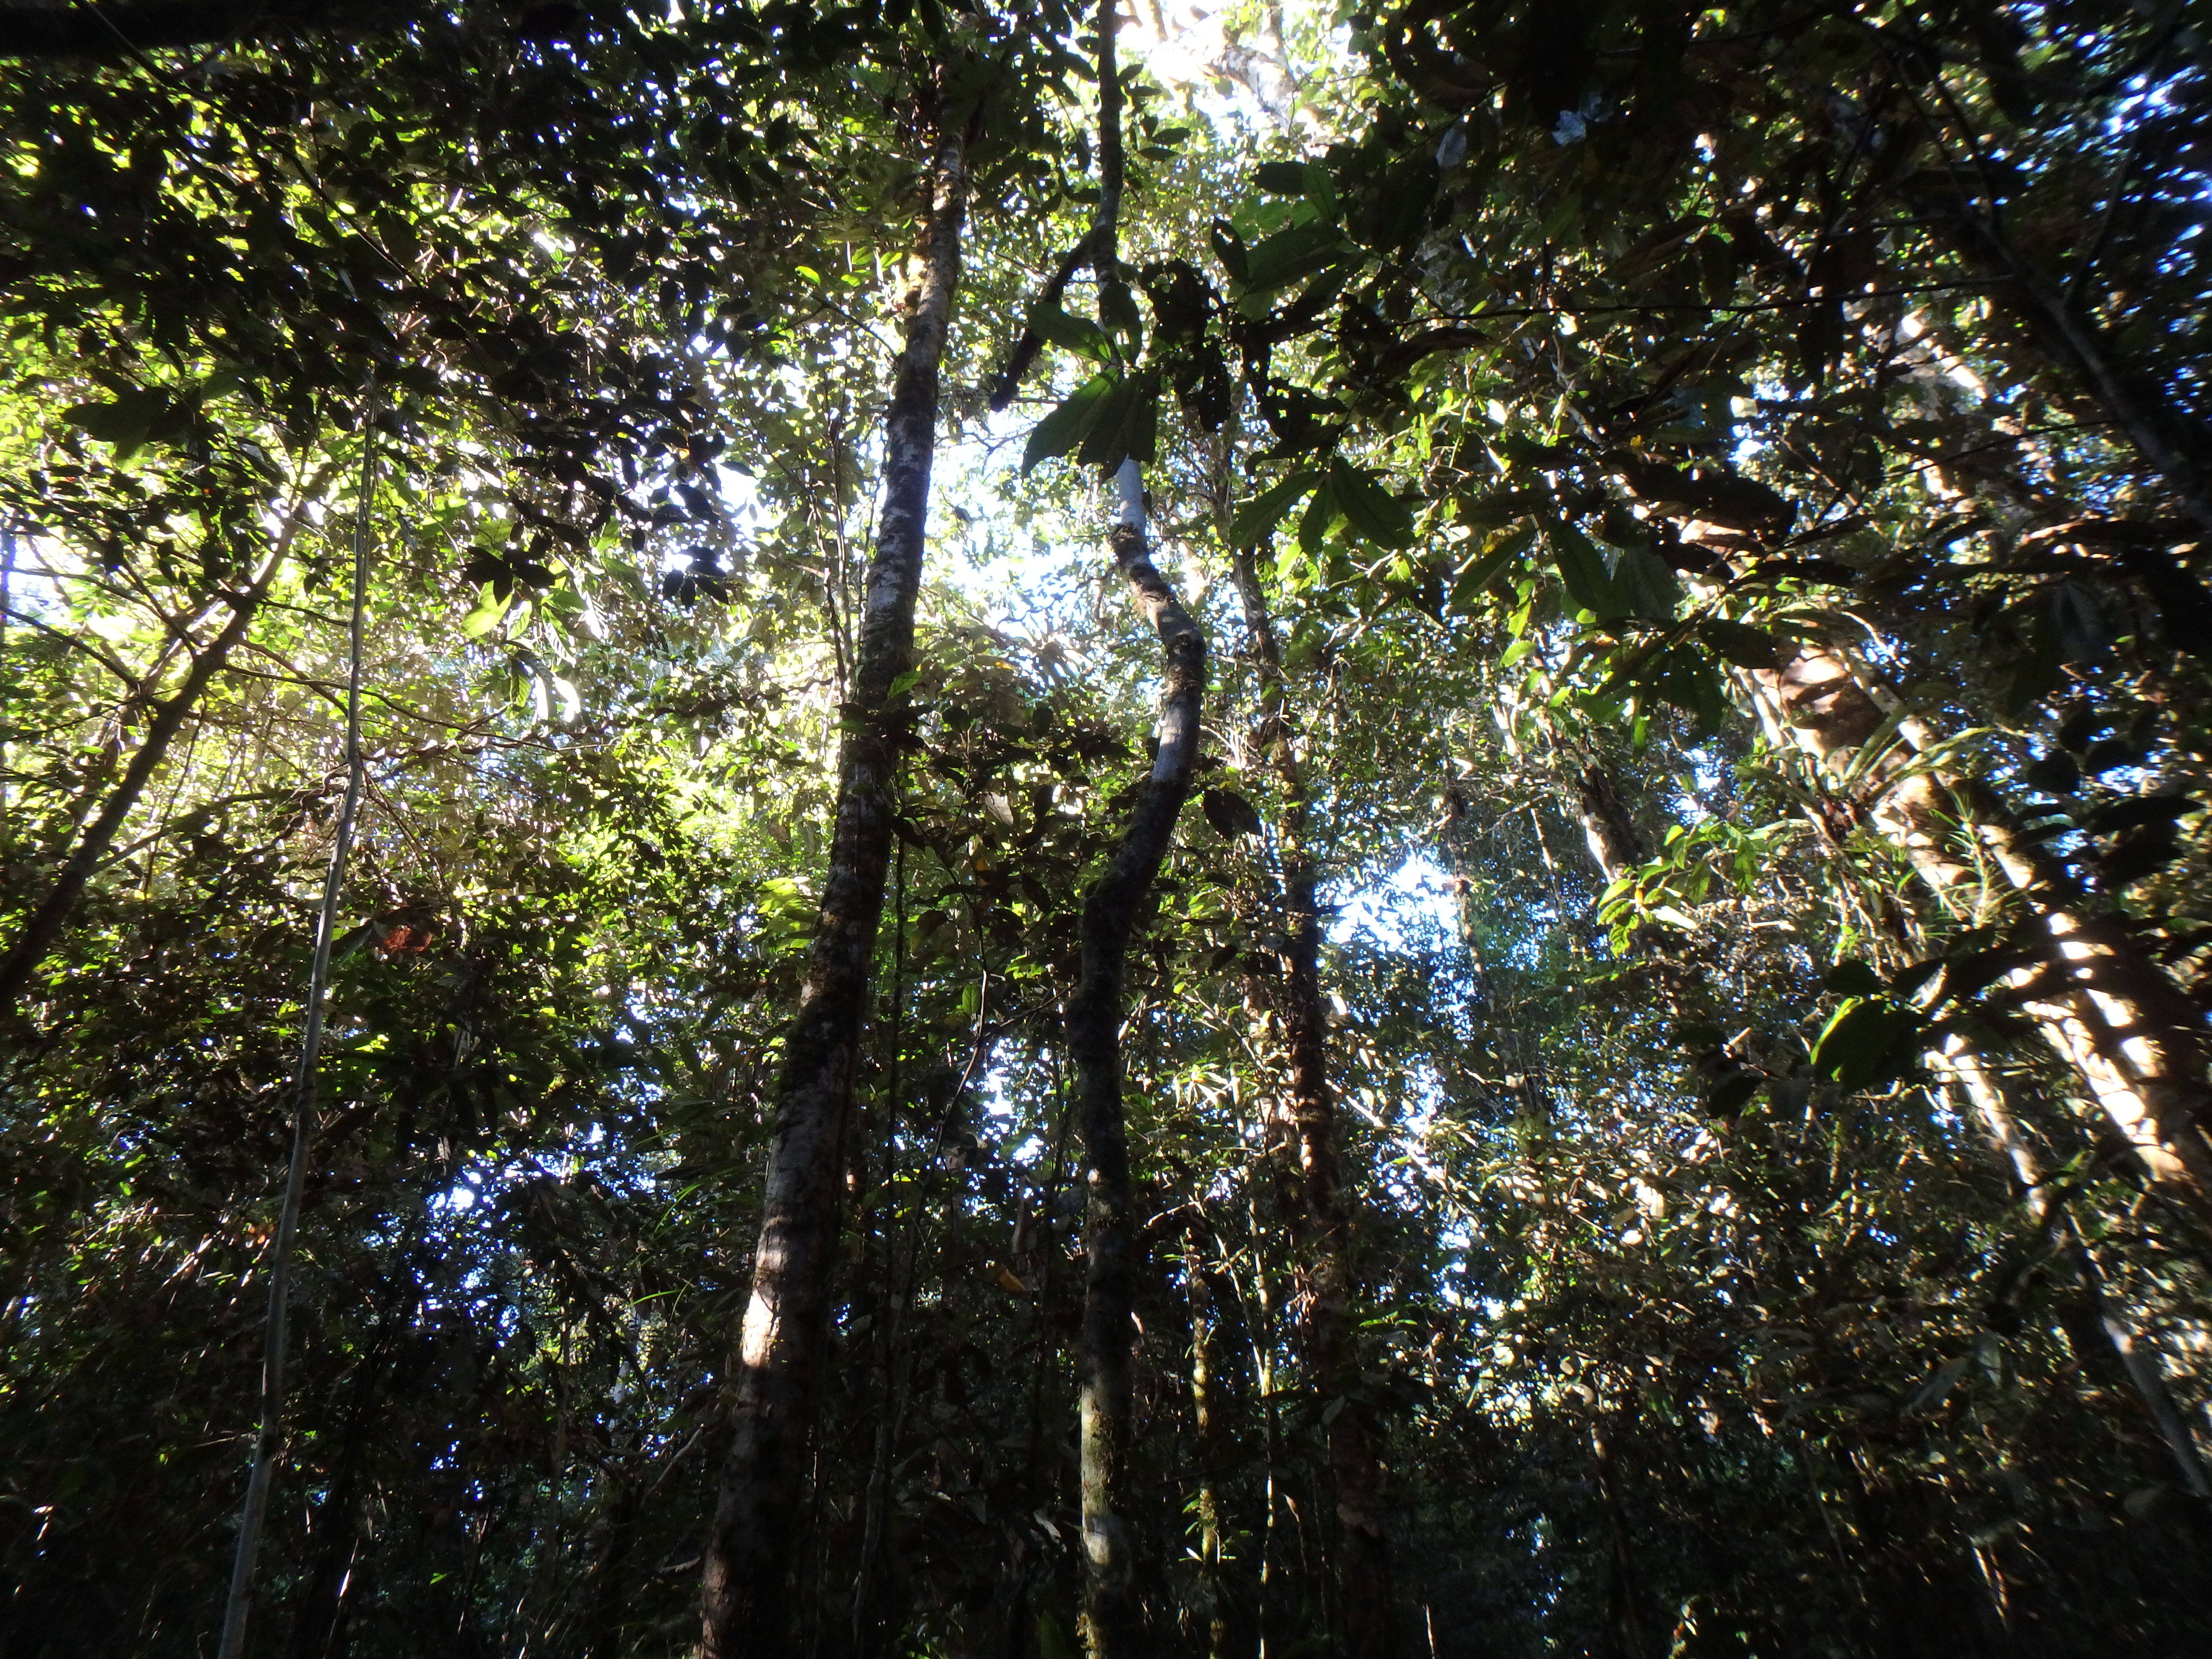 Rainforest canopy in Gunung Mulu National Park.